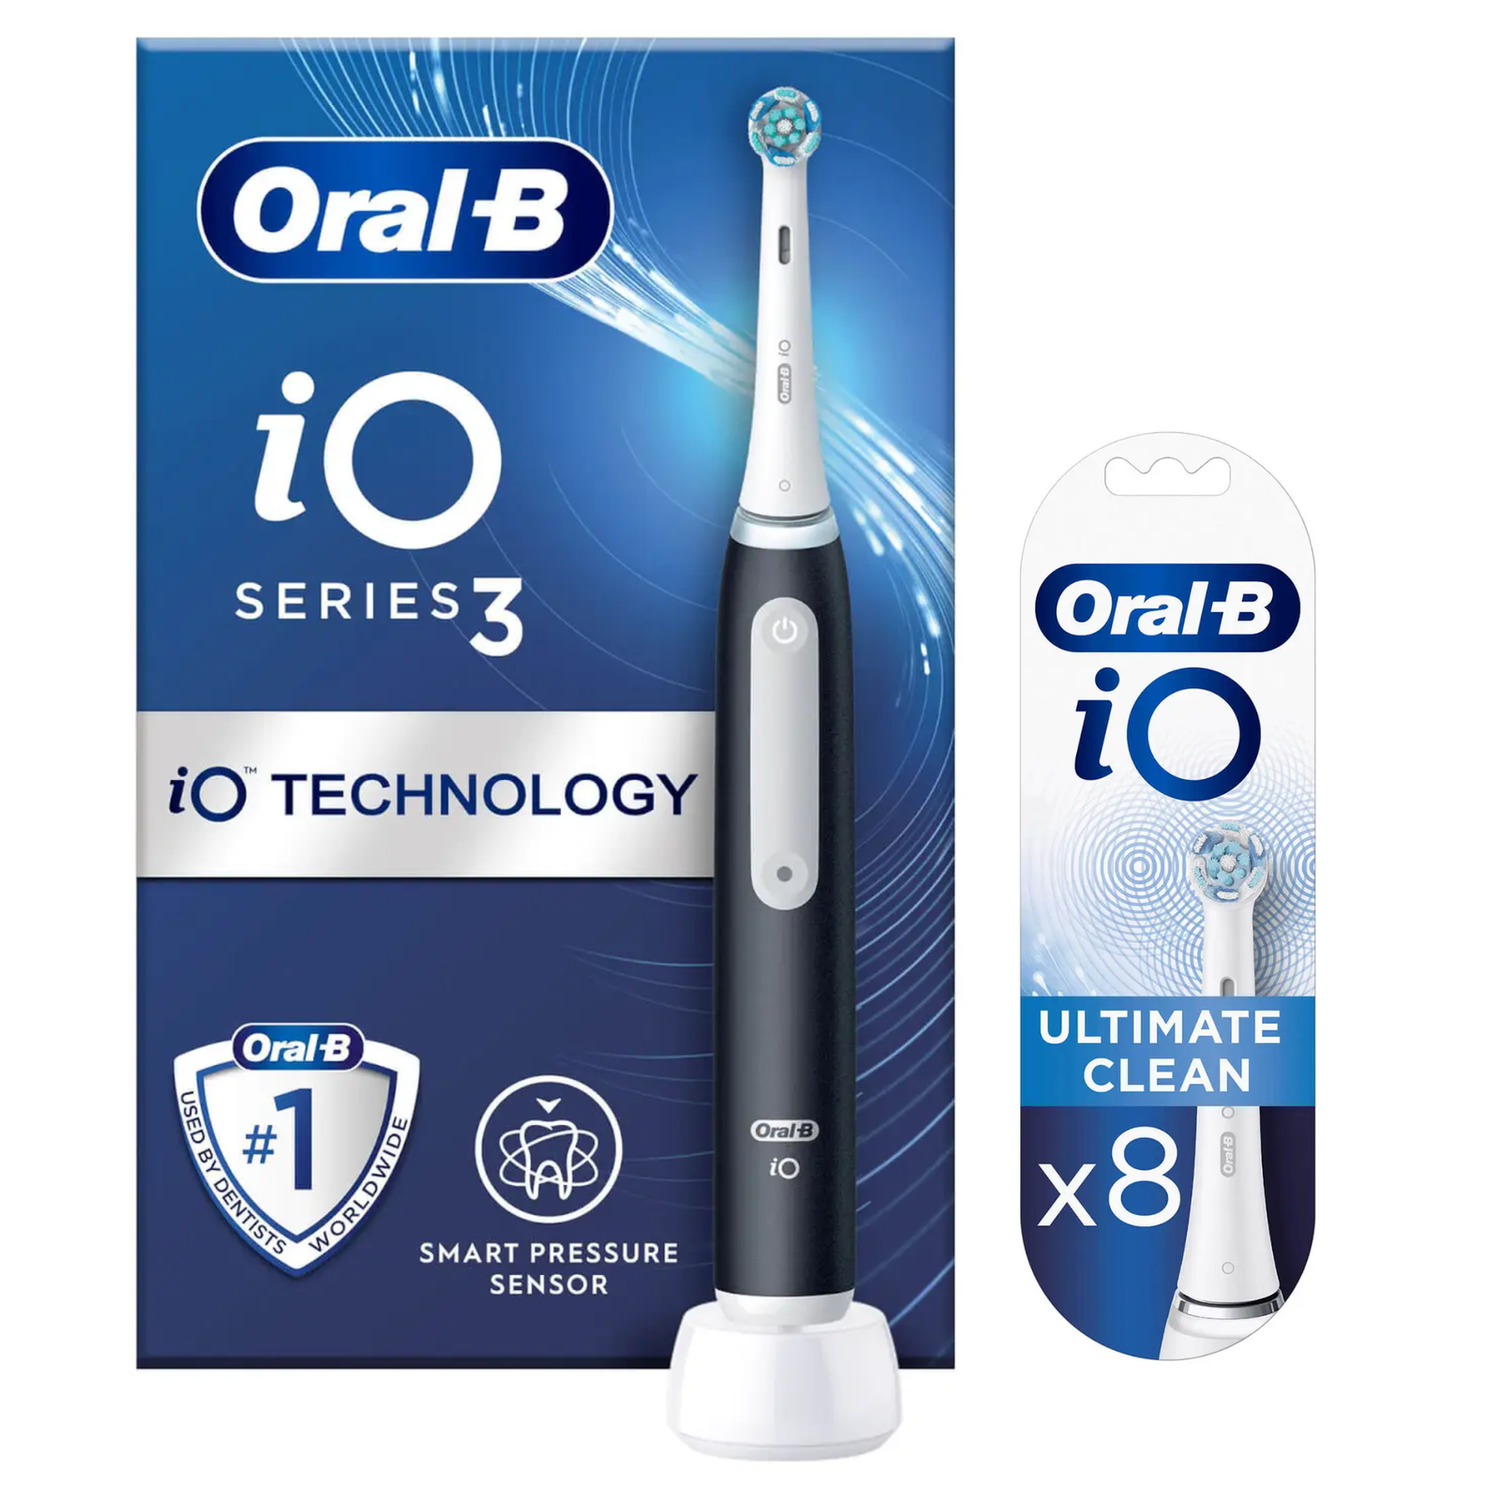 Oral-B iO3 Matte Black Electric Toothbrush